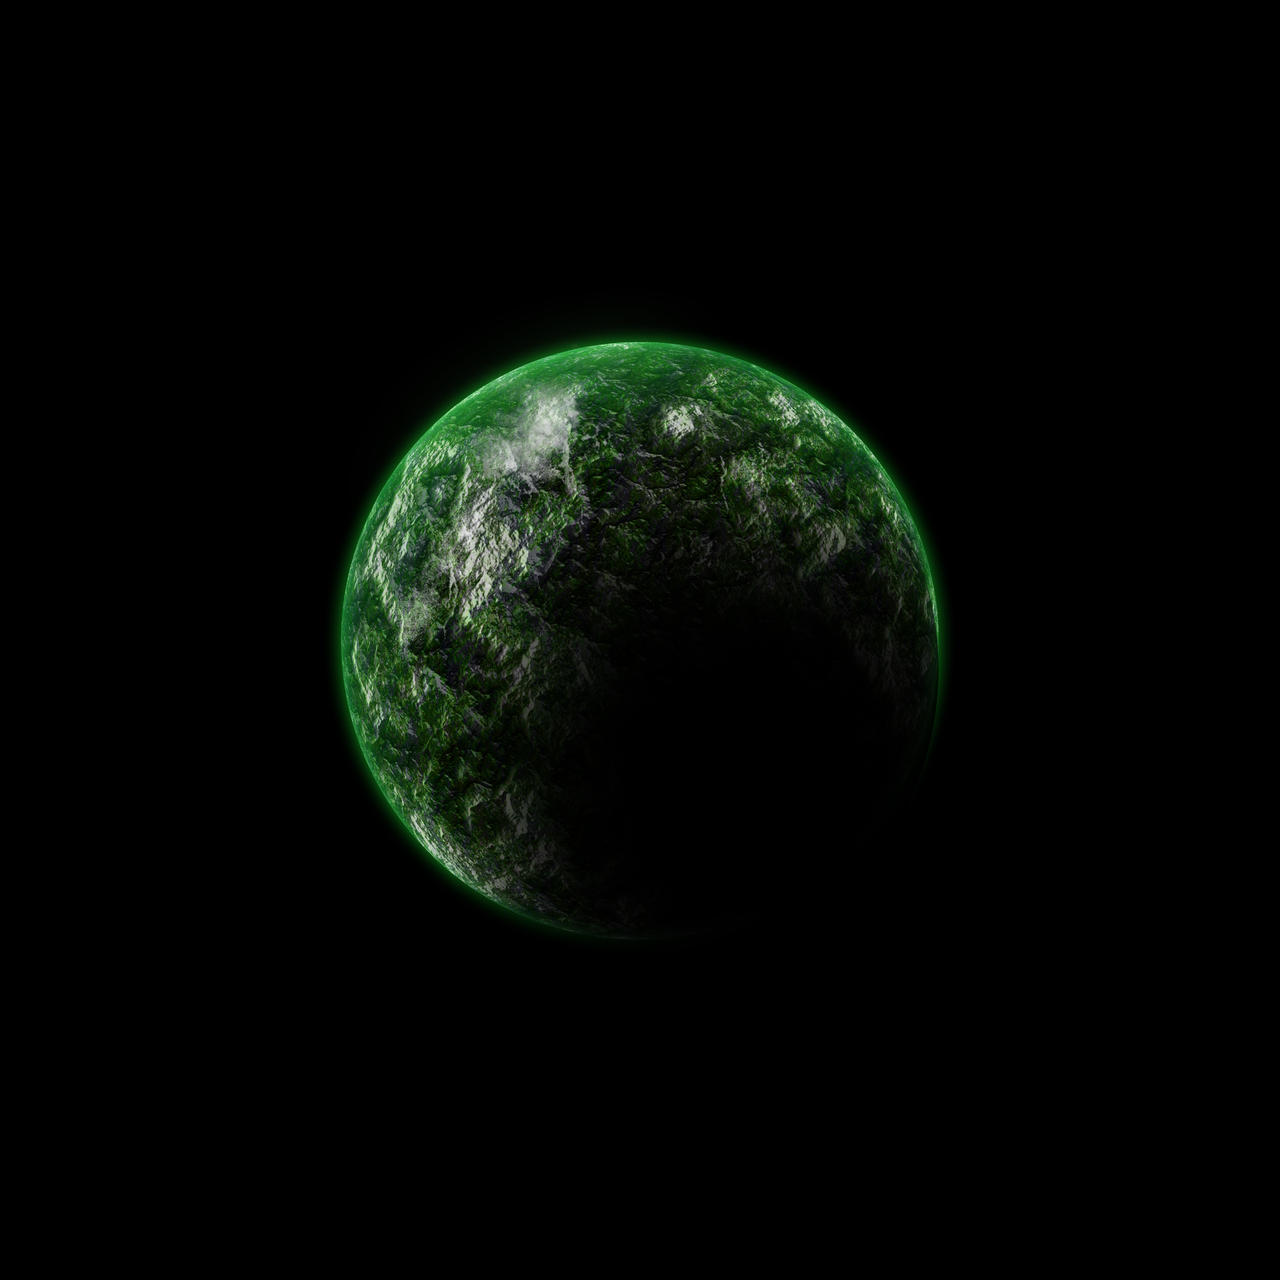 green_planet_by_huglebunnys-d2yms5q.jpg